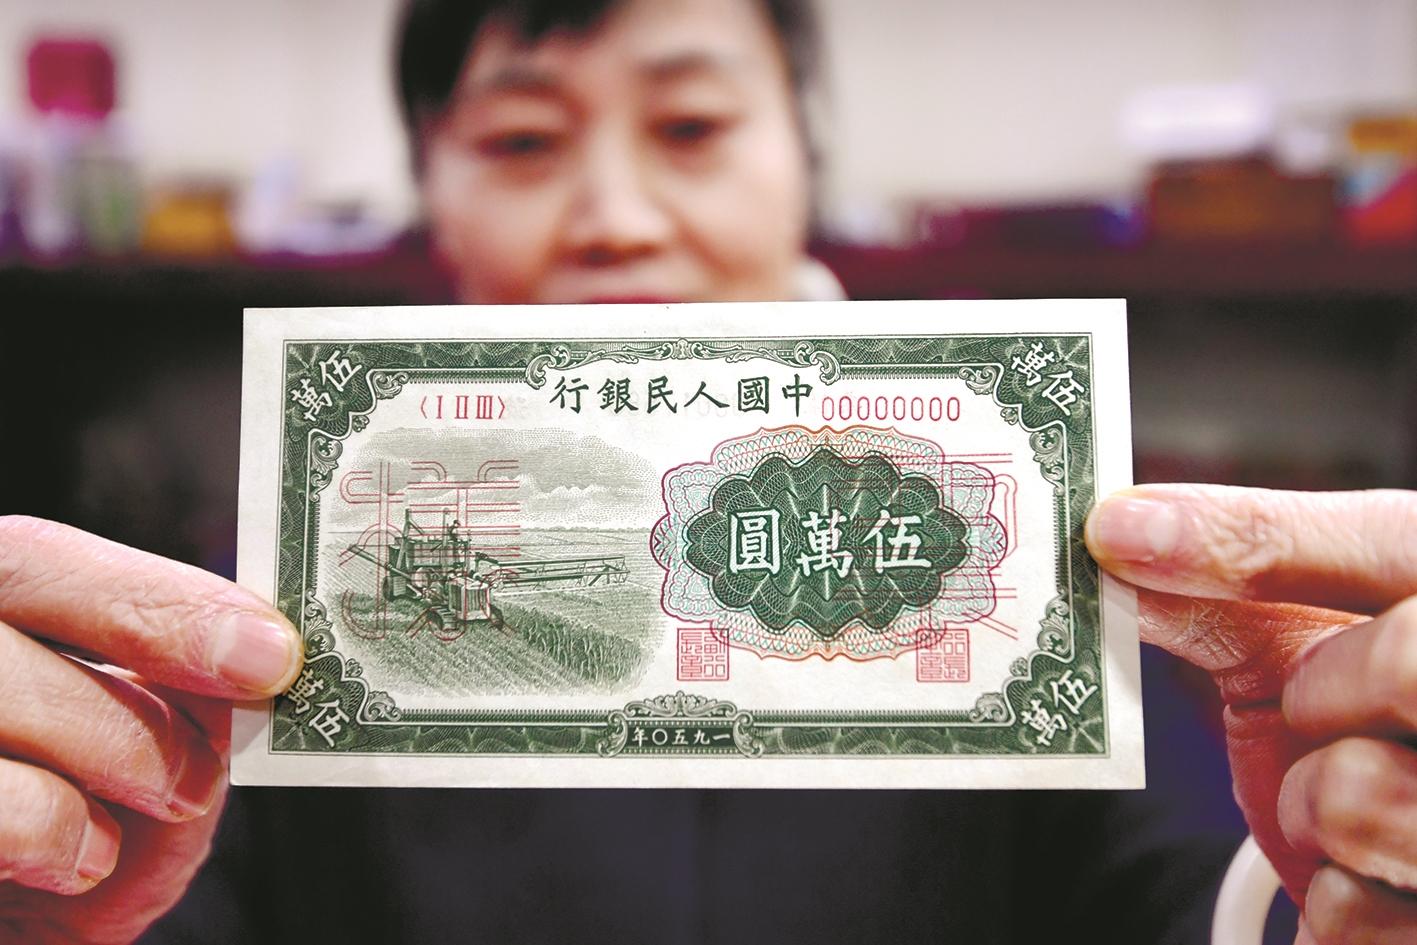 第一套人民币发行71周年 揭秘印钞中的武汉故事 首套人民币蓝色20元